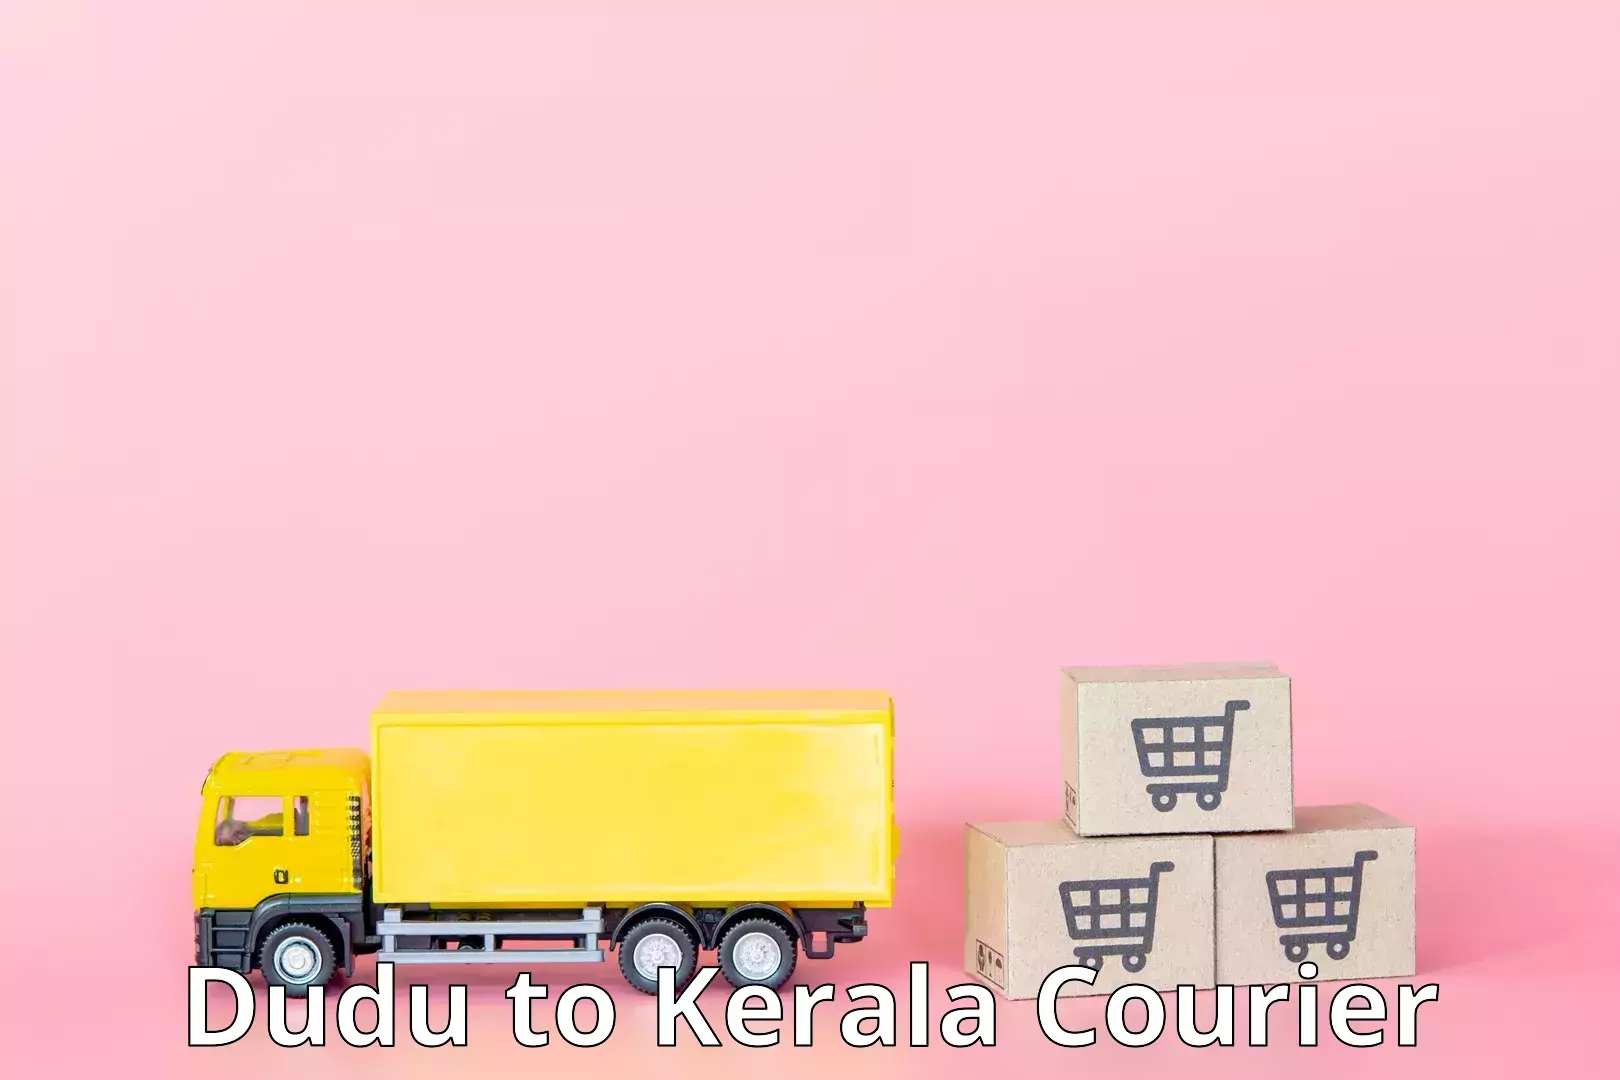 Domestic courier Dudu to Kerala